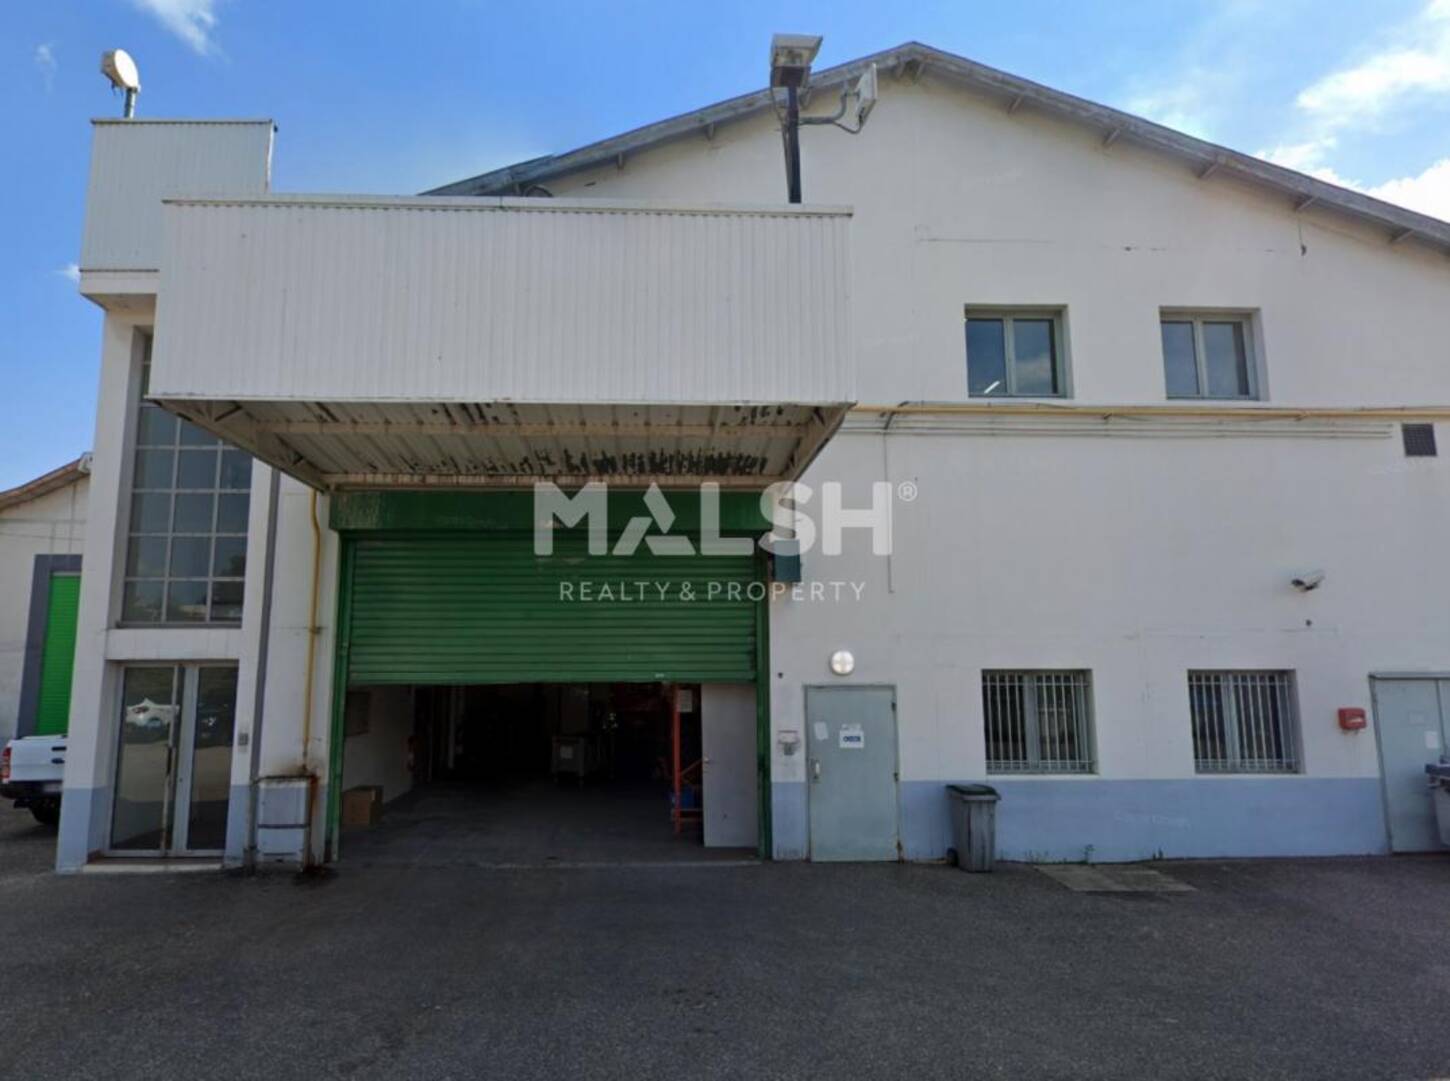 MALSH Realty & Property - Local d'activités - Lyon 8°/ Hôpitaux - Lyon 8 - 2